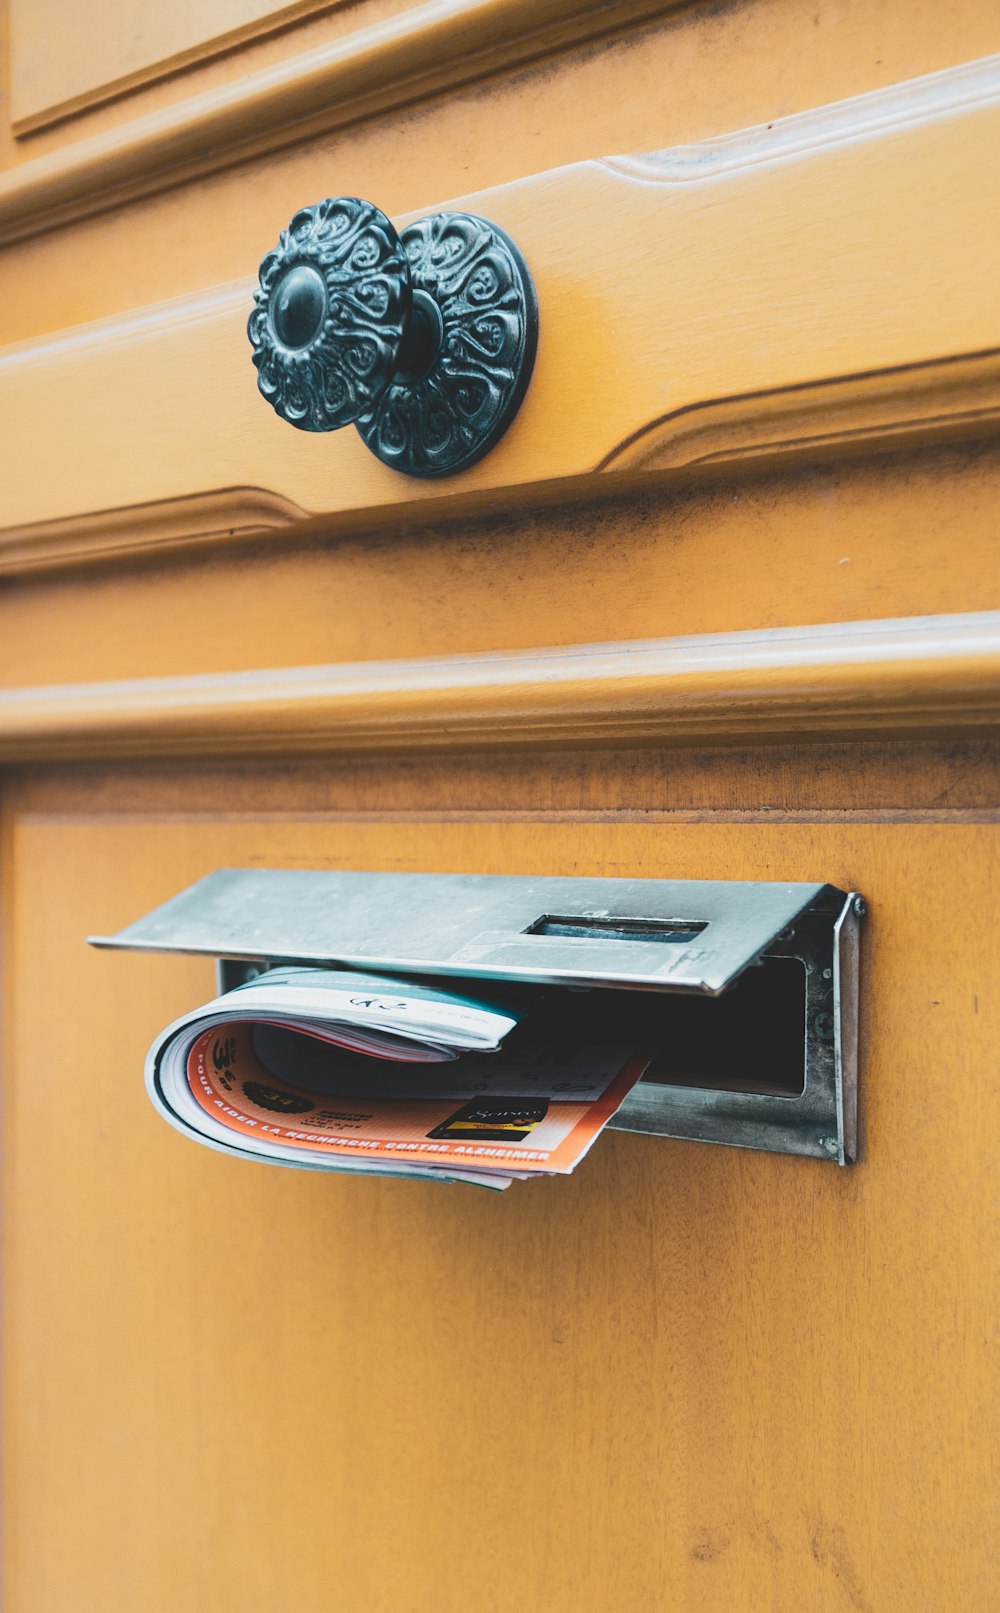 brochure on door's mail slot